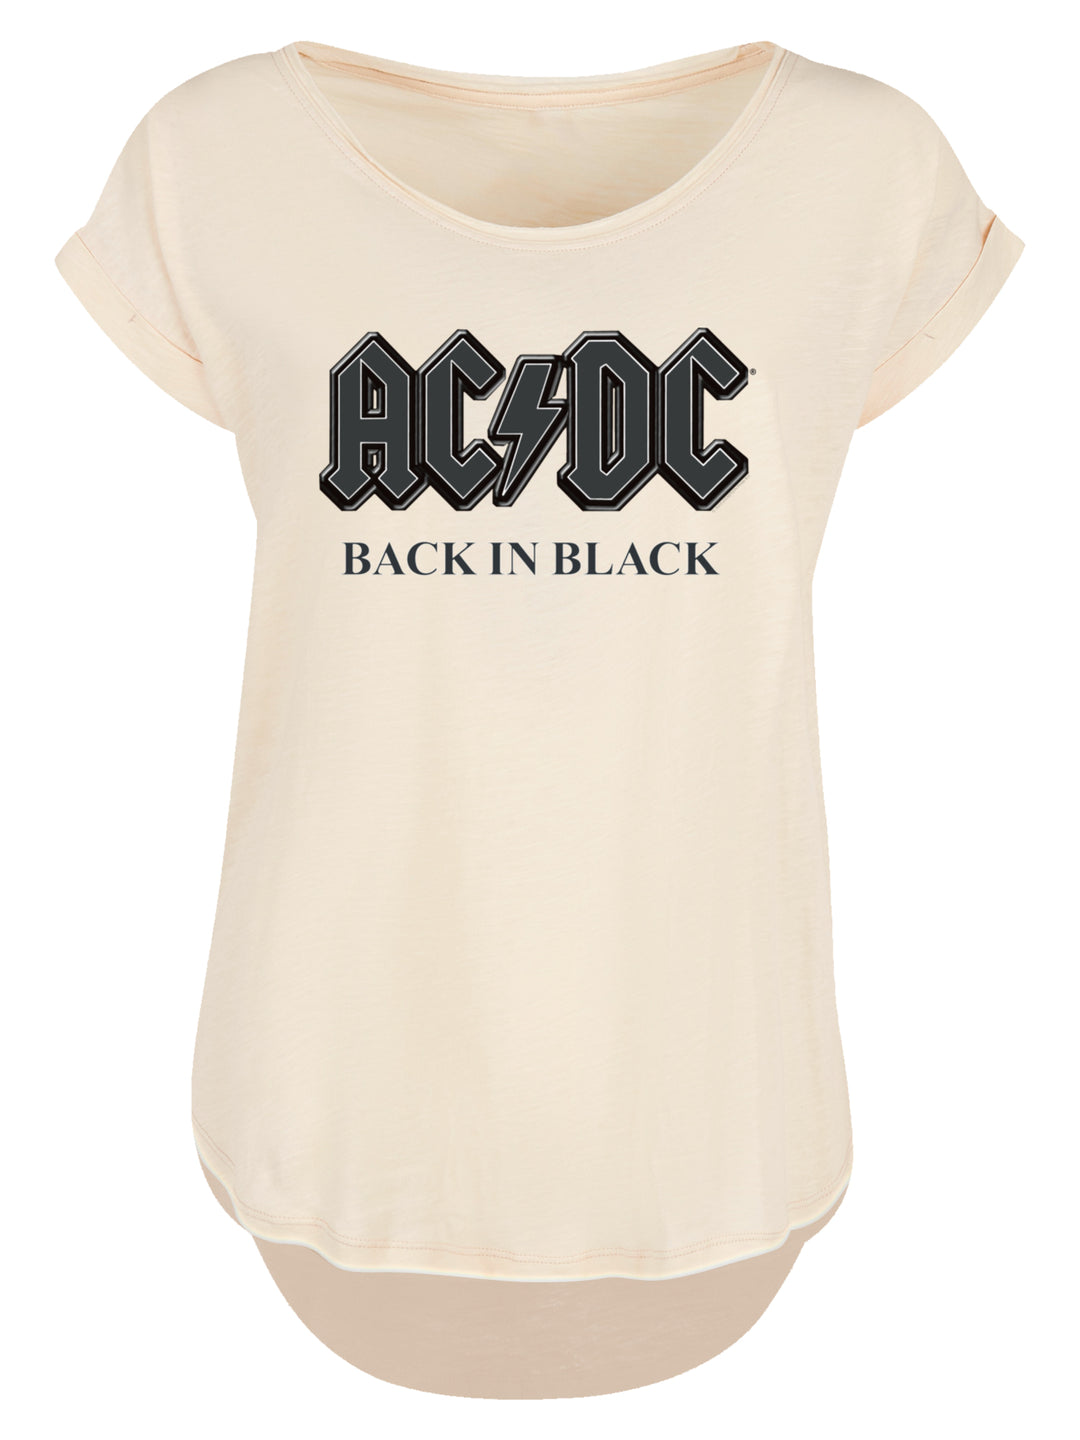 ACDC Back in Black with Ladies Long Slub Tee